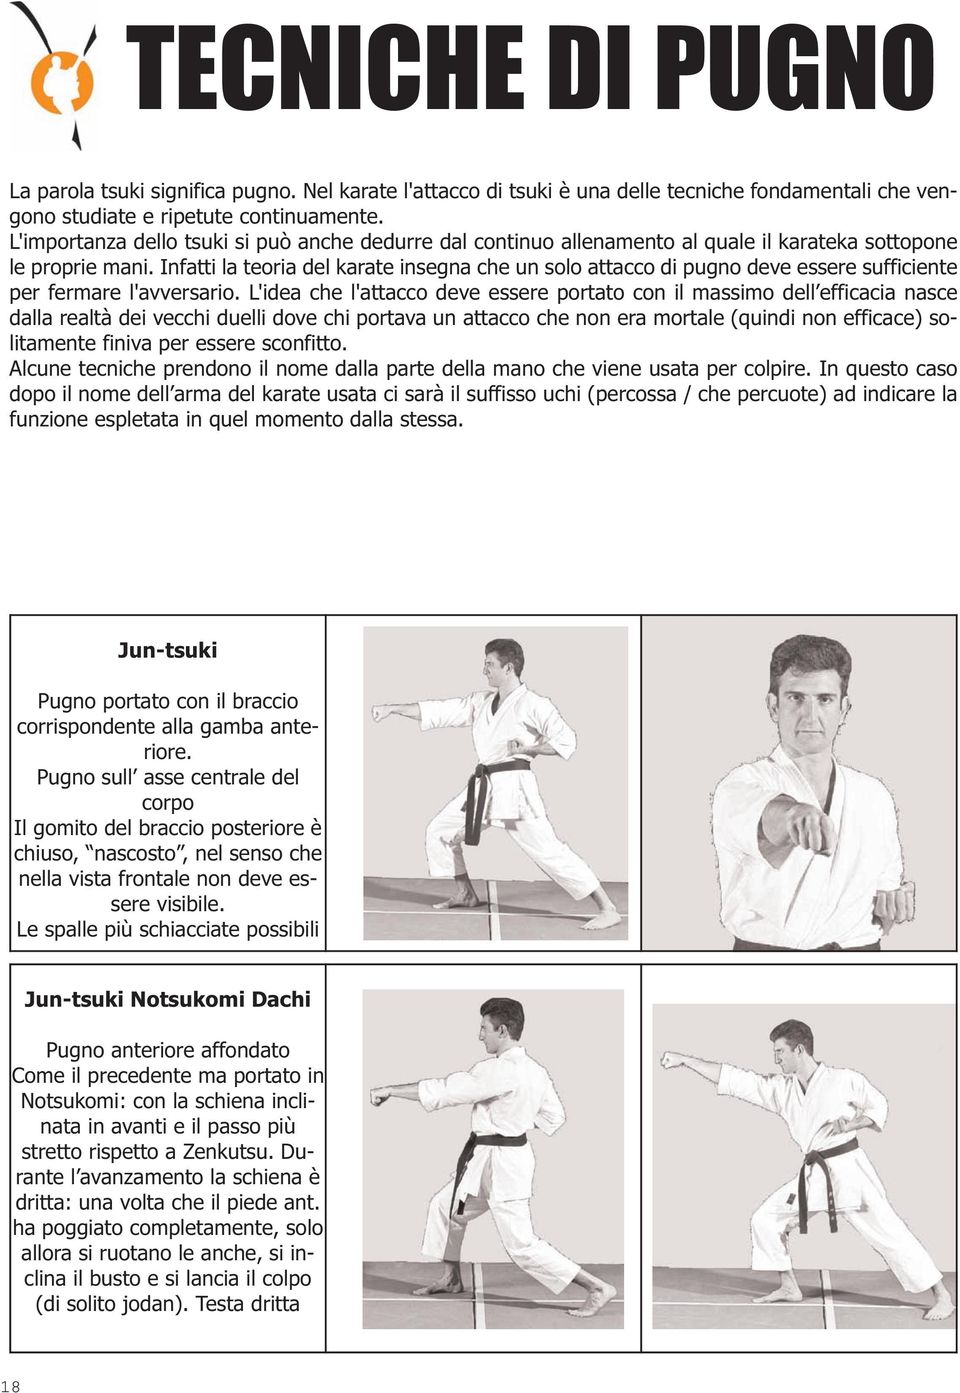 Infatti la teoria del karate insegna che un solo attacco di pugno deve essere sufficiente per fermare l'avversario.